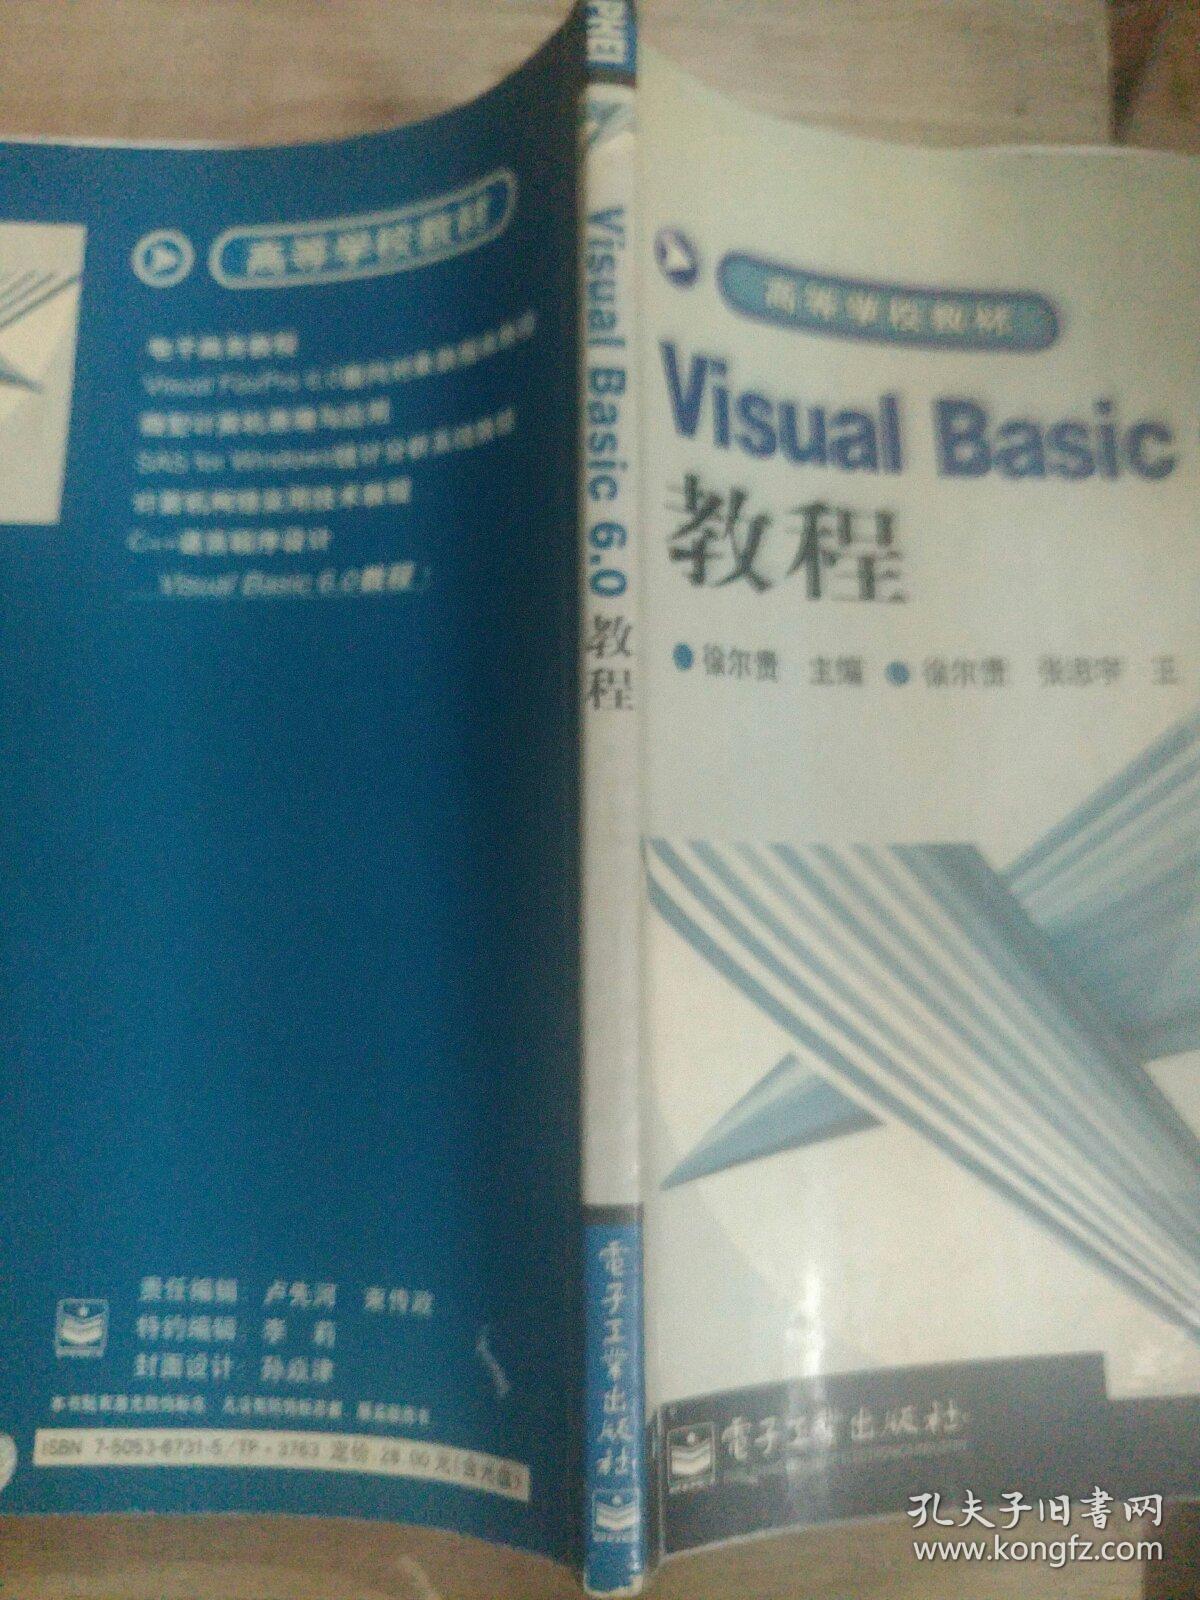 Visual Basic 6.0 教程(含盘)